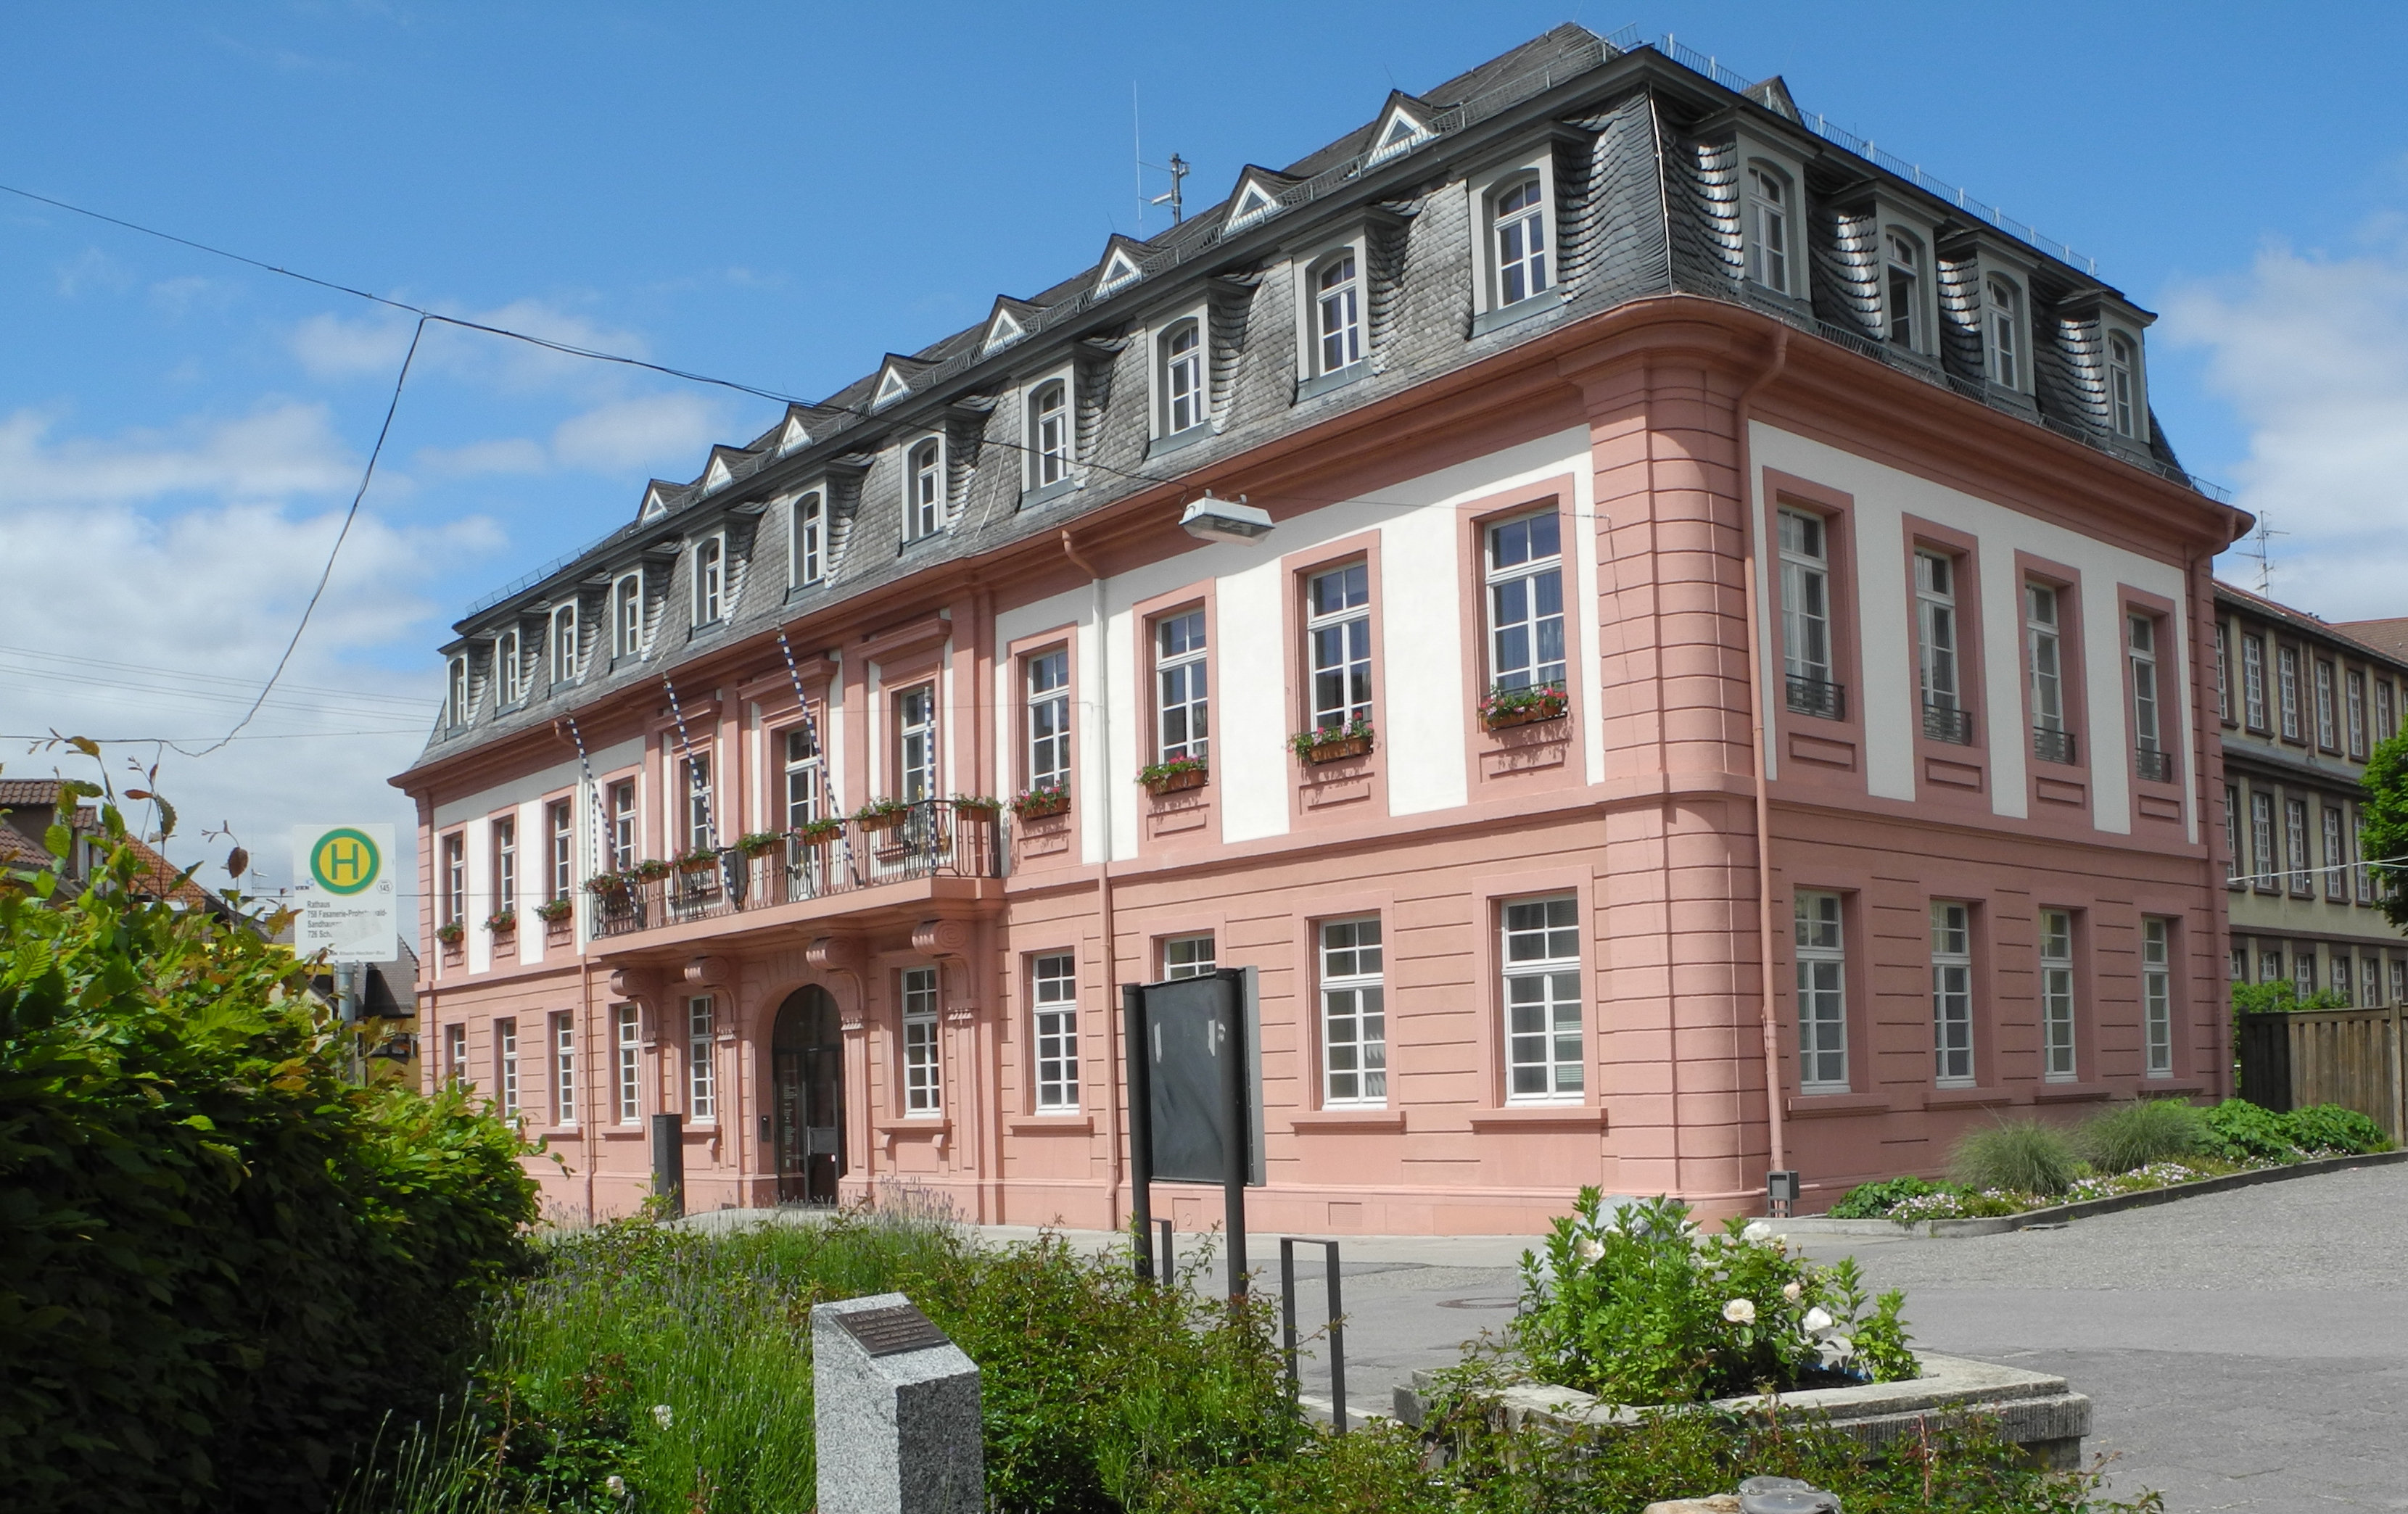  Das Hauptamt zieht zurück in das historische Rathaus in Leimen-Mitte 